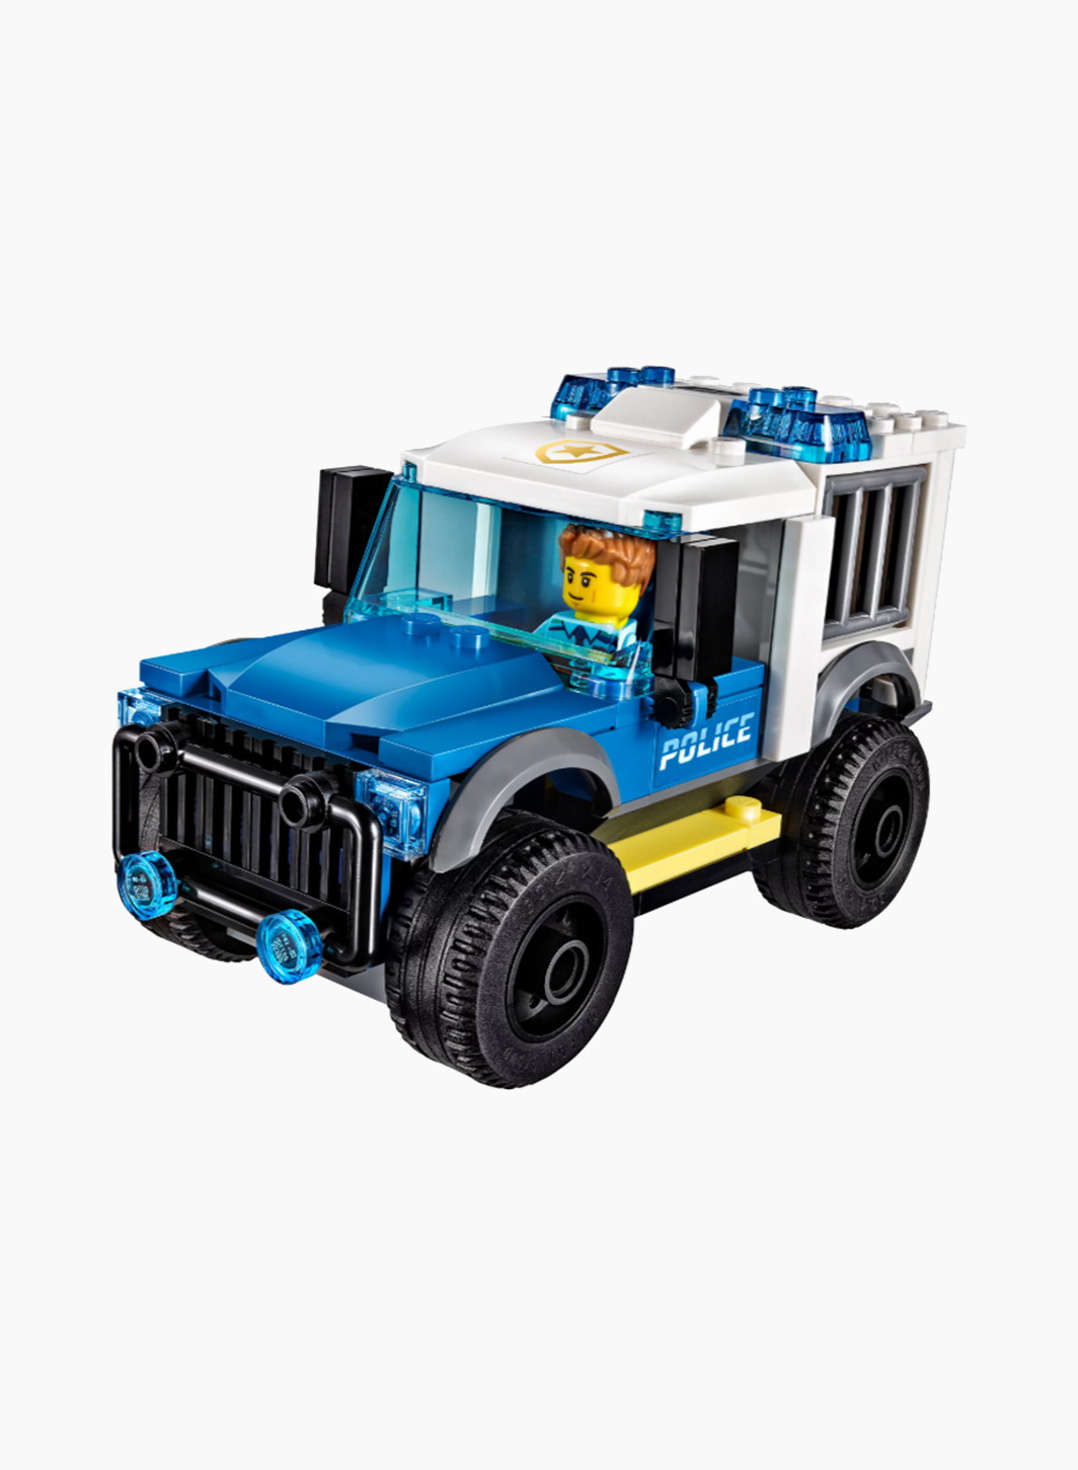 Lego City Конструктор Полицейский участок